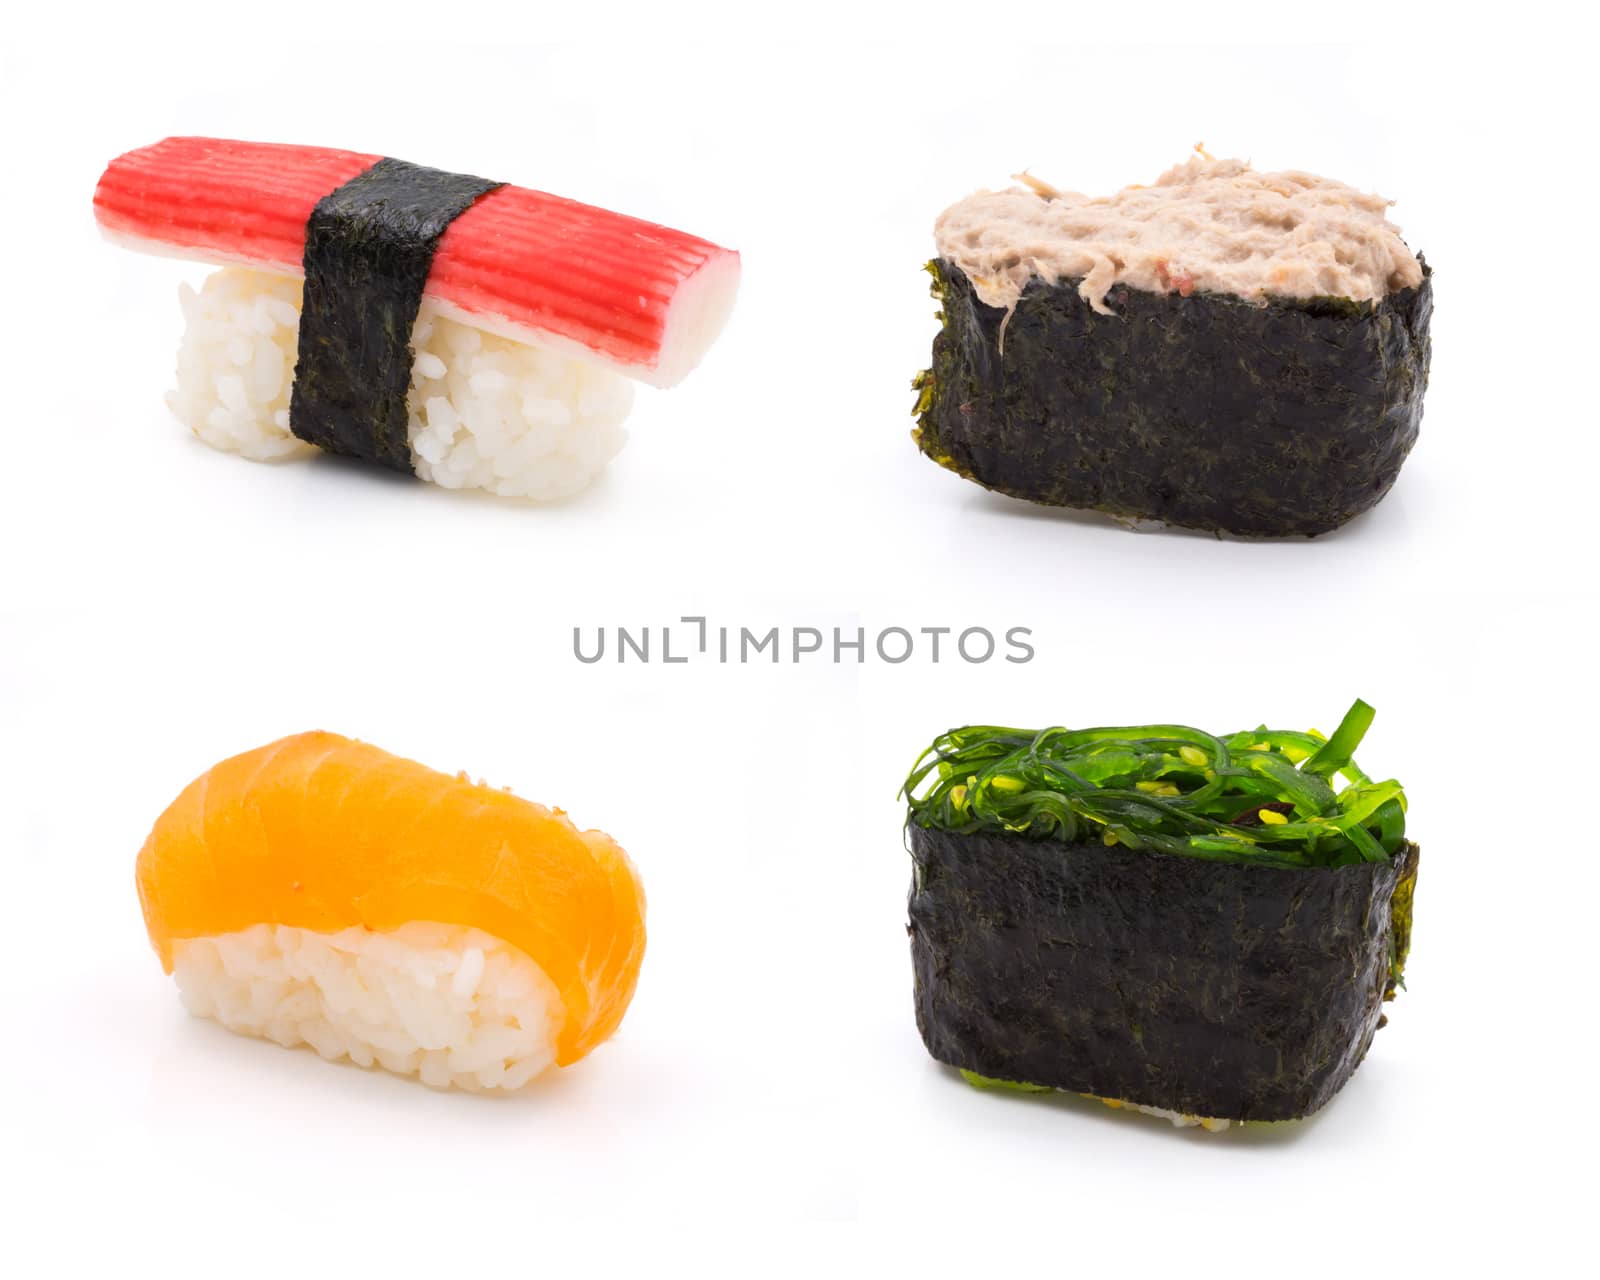 Sushi set on white background, Japanese food.